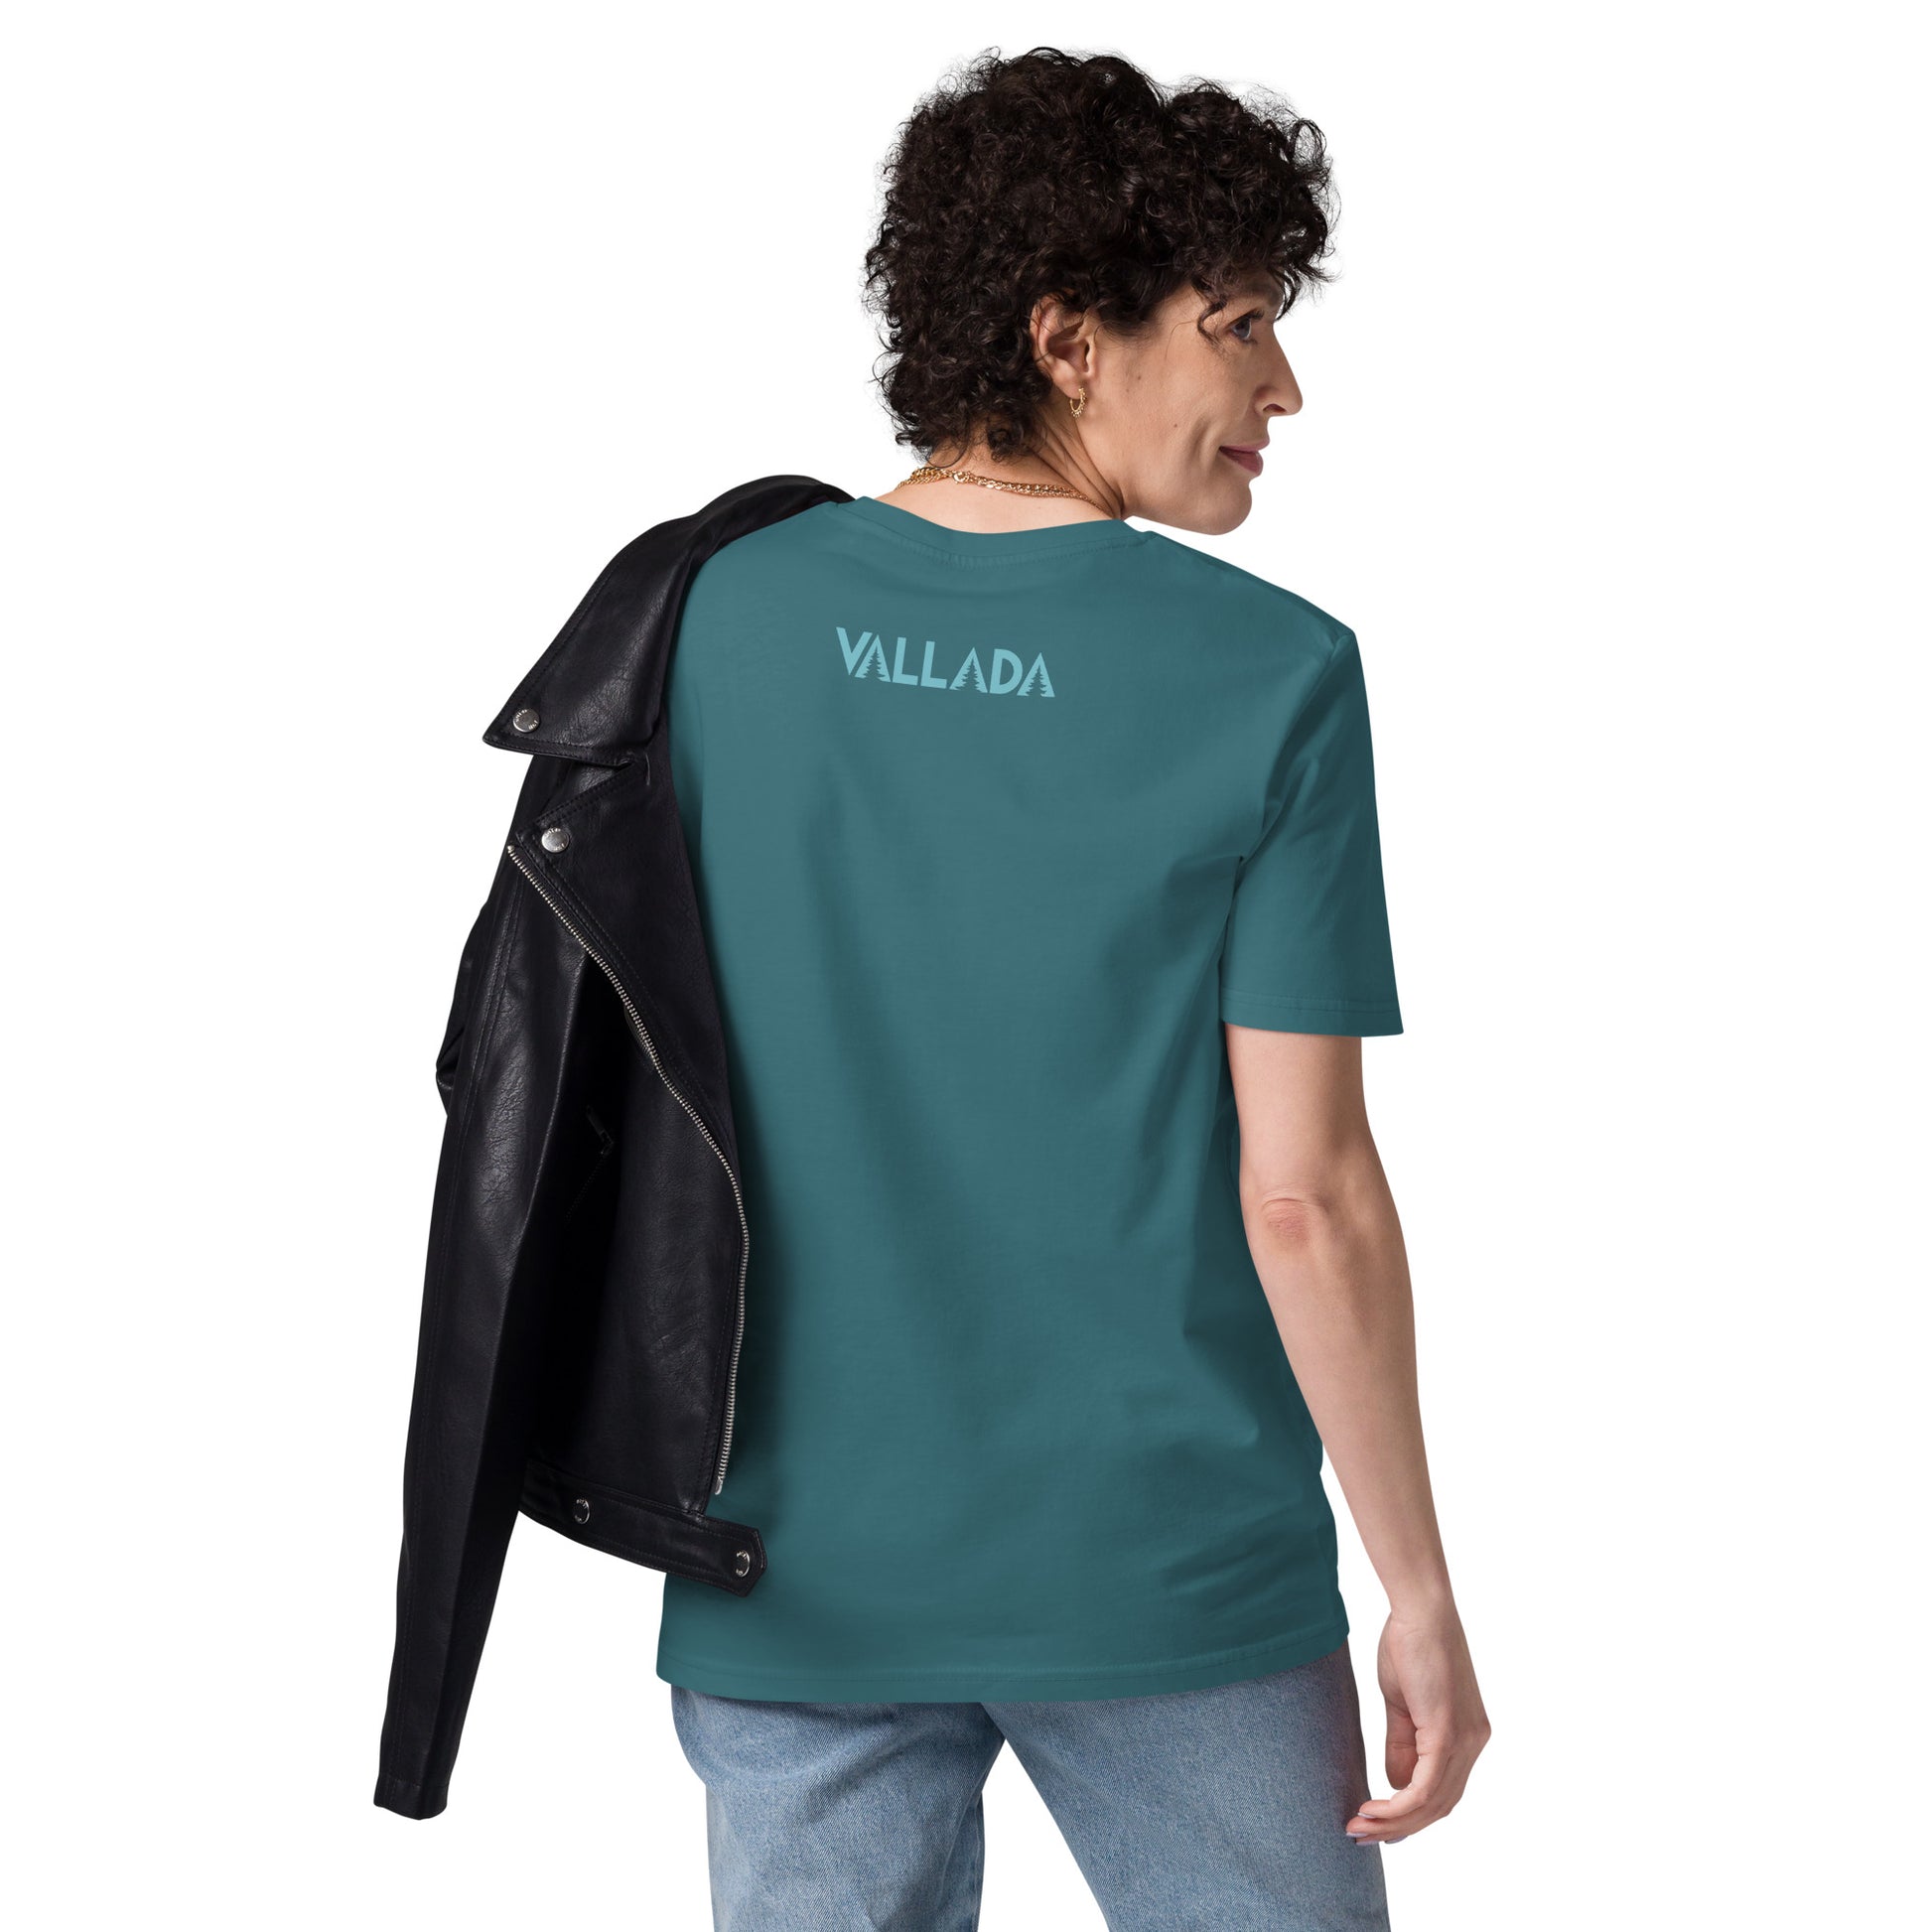 Dieses Modell trägt Damen T-Shirt in der Farbe Stargazer aus der Säntis-Collection von Vallada. Sie steht mit dem Rücken zur Kamera, so dass wir das Vallada-Logo sehen.